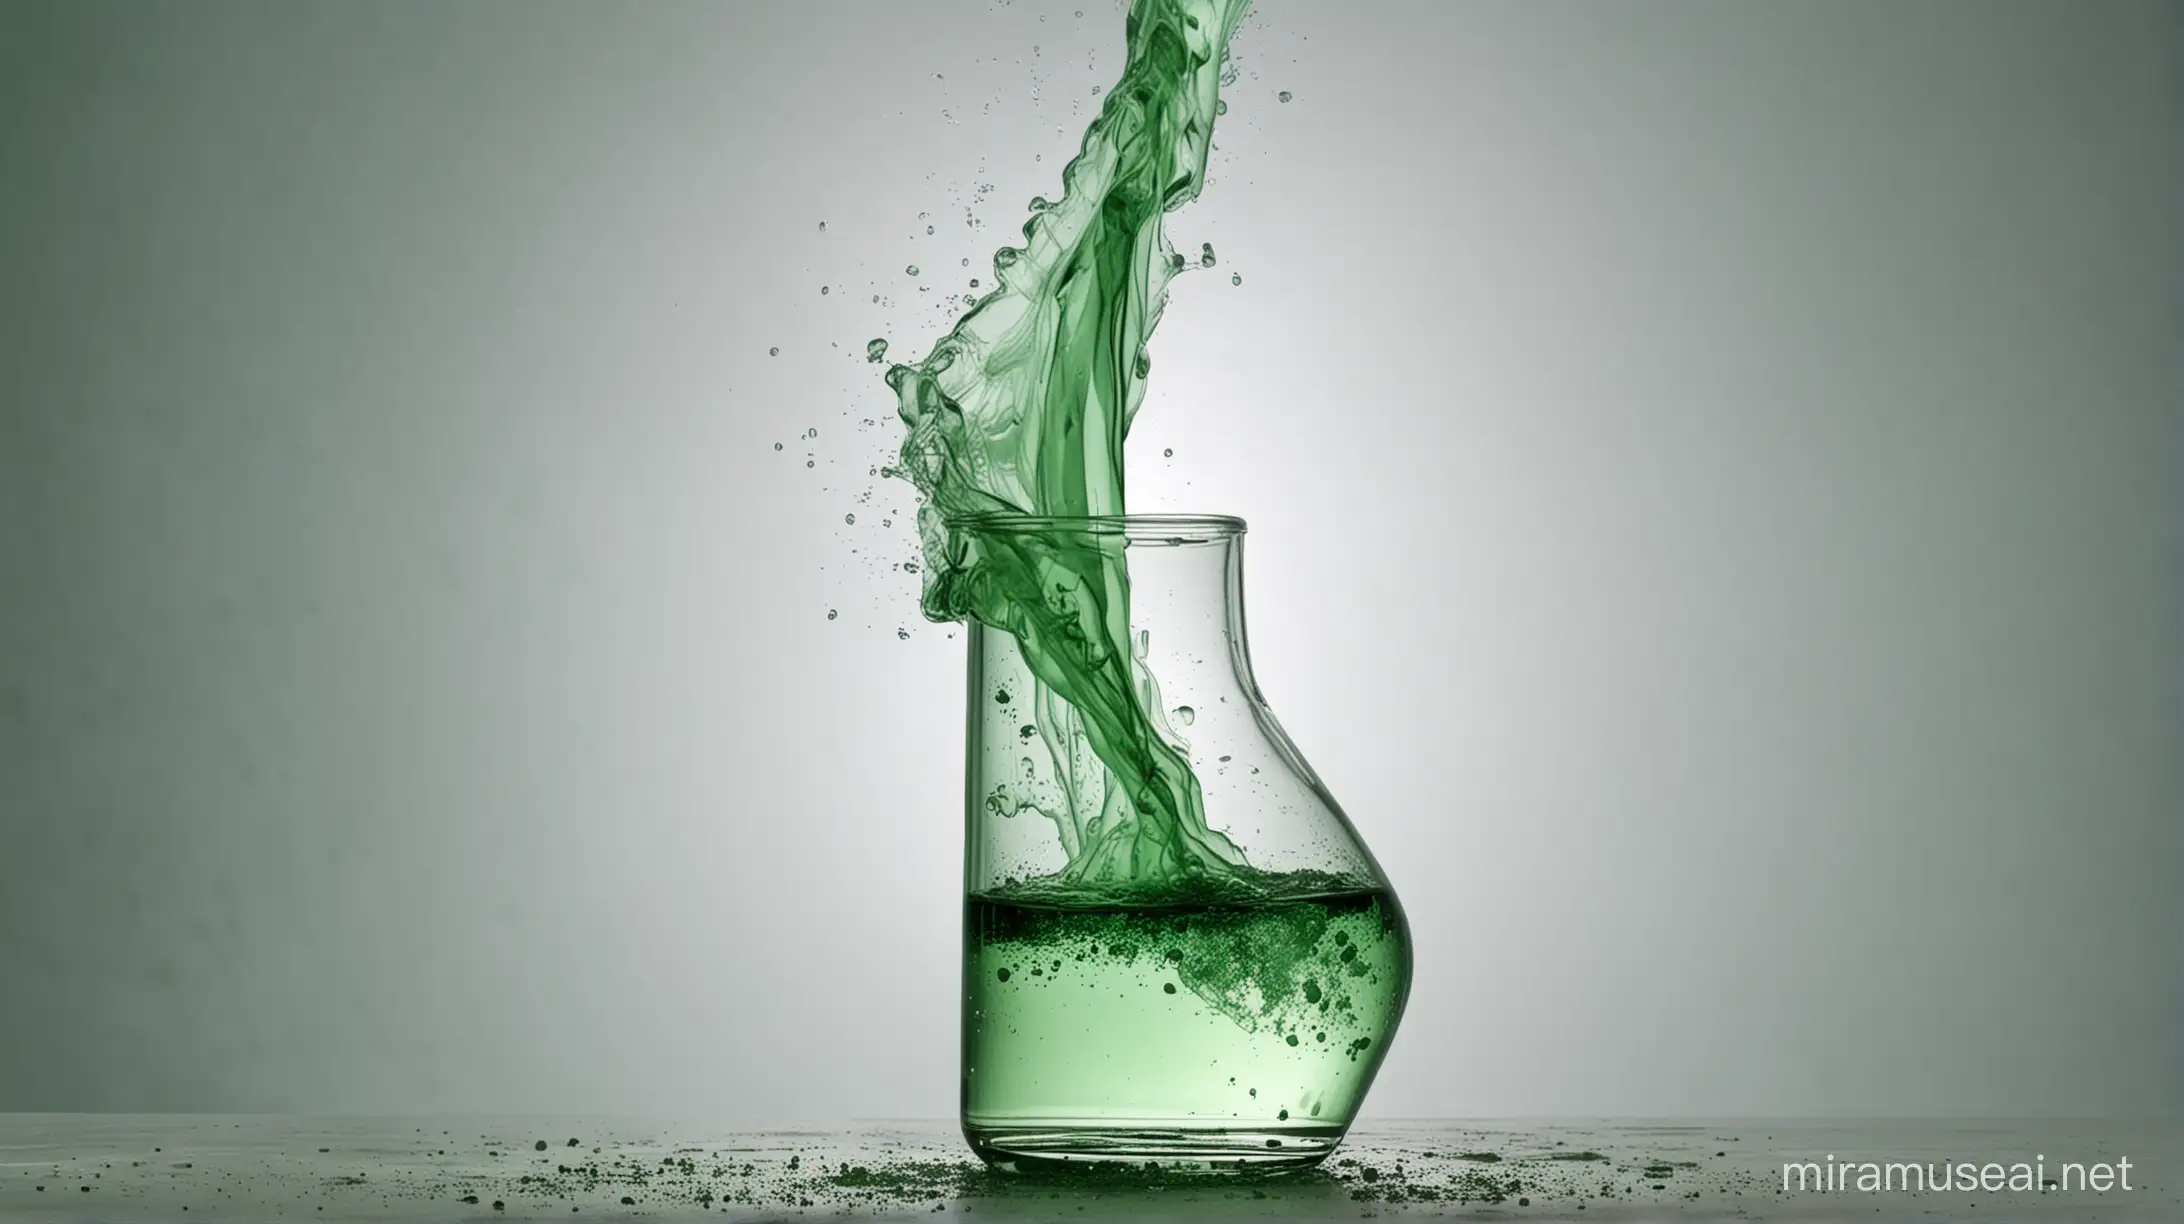 Green Smoke Escapes Broken Glass in Laboratory